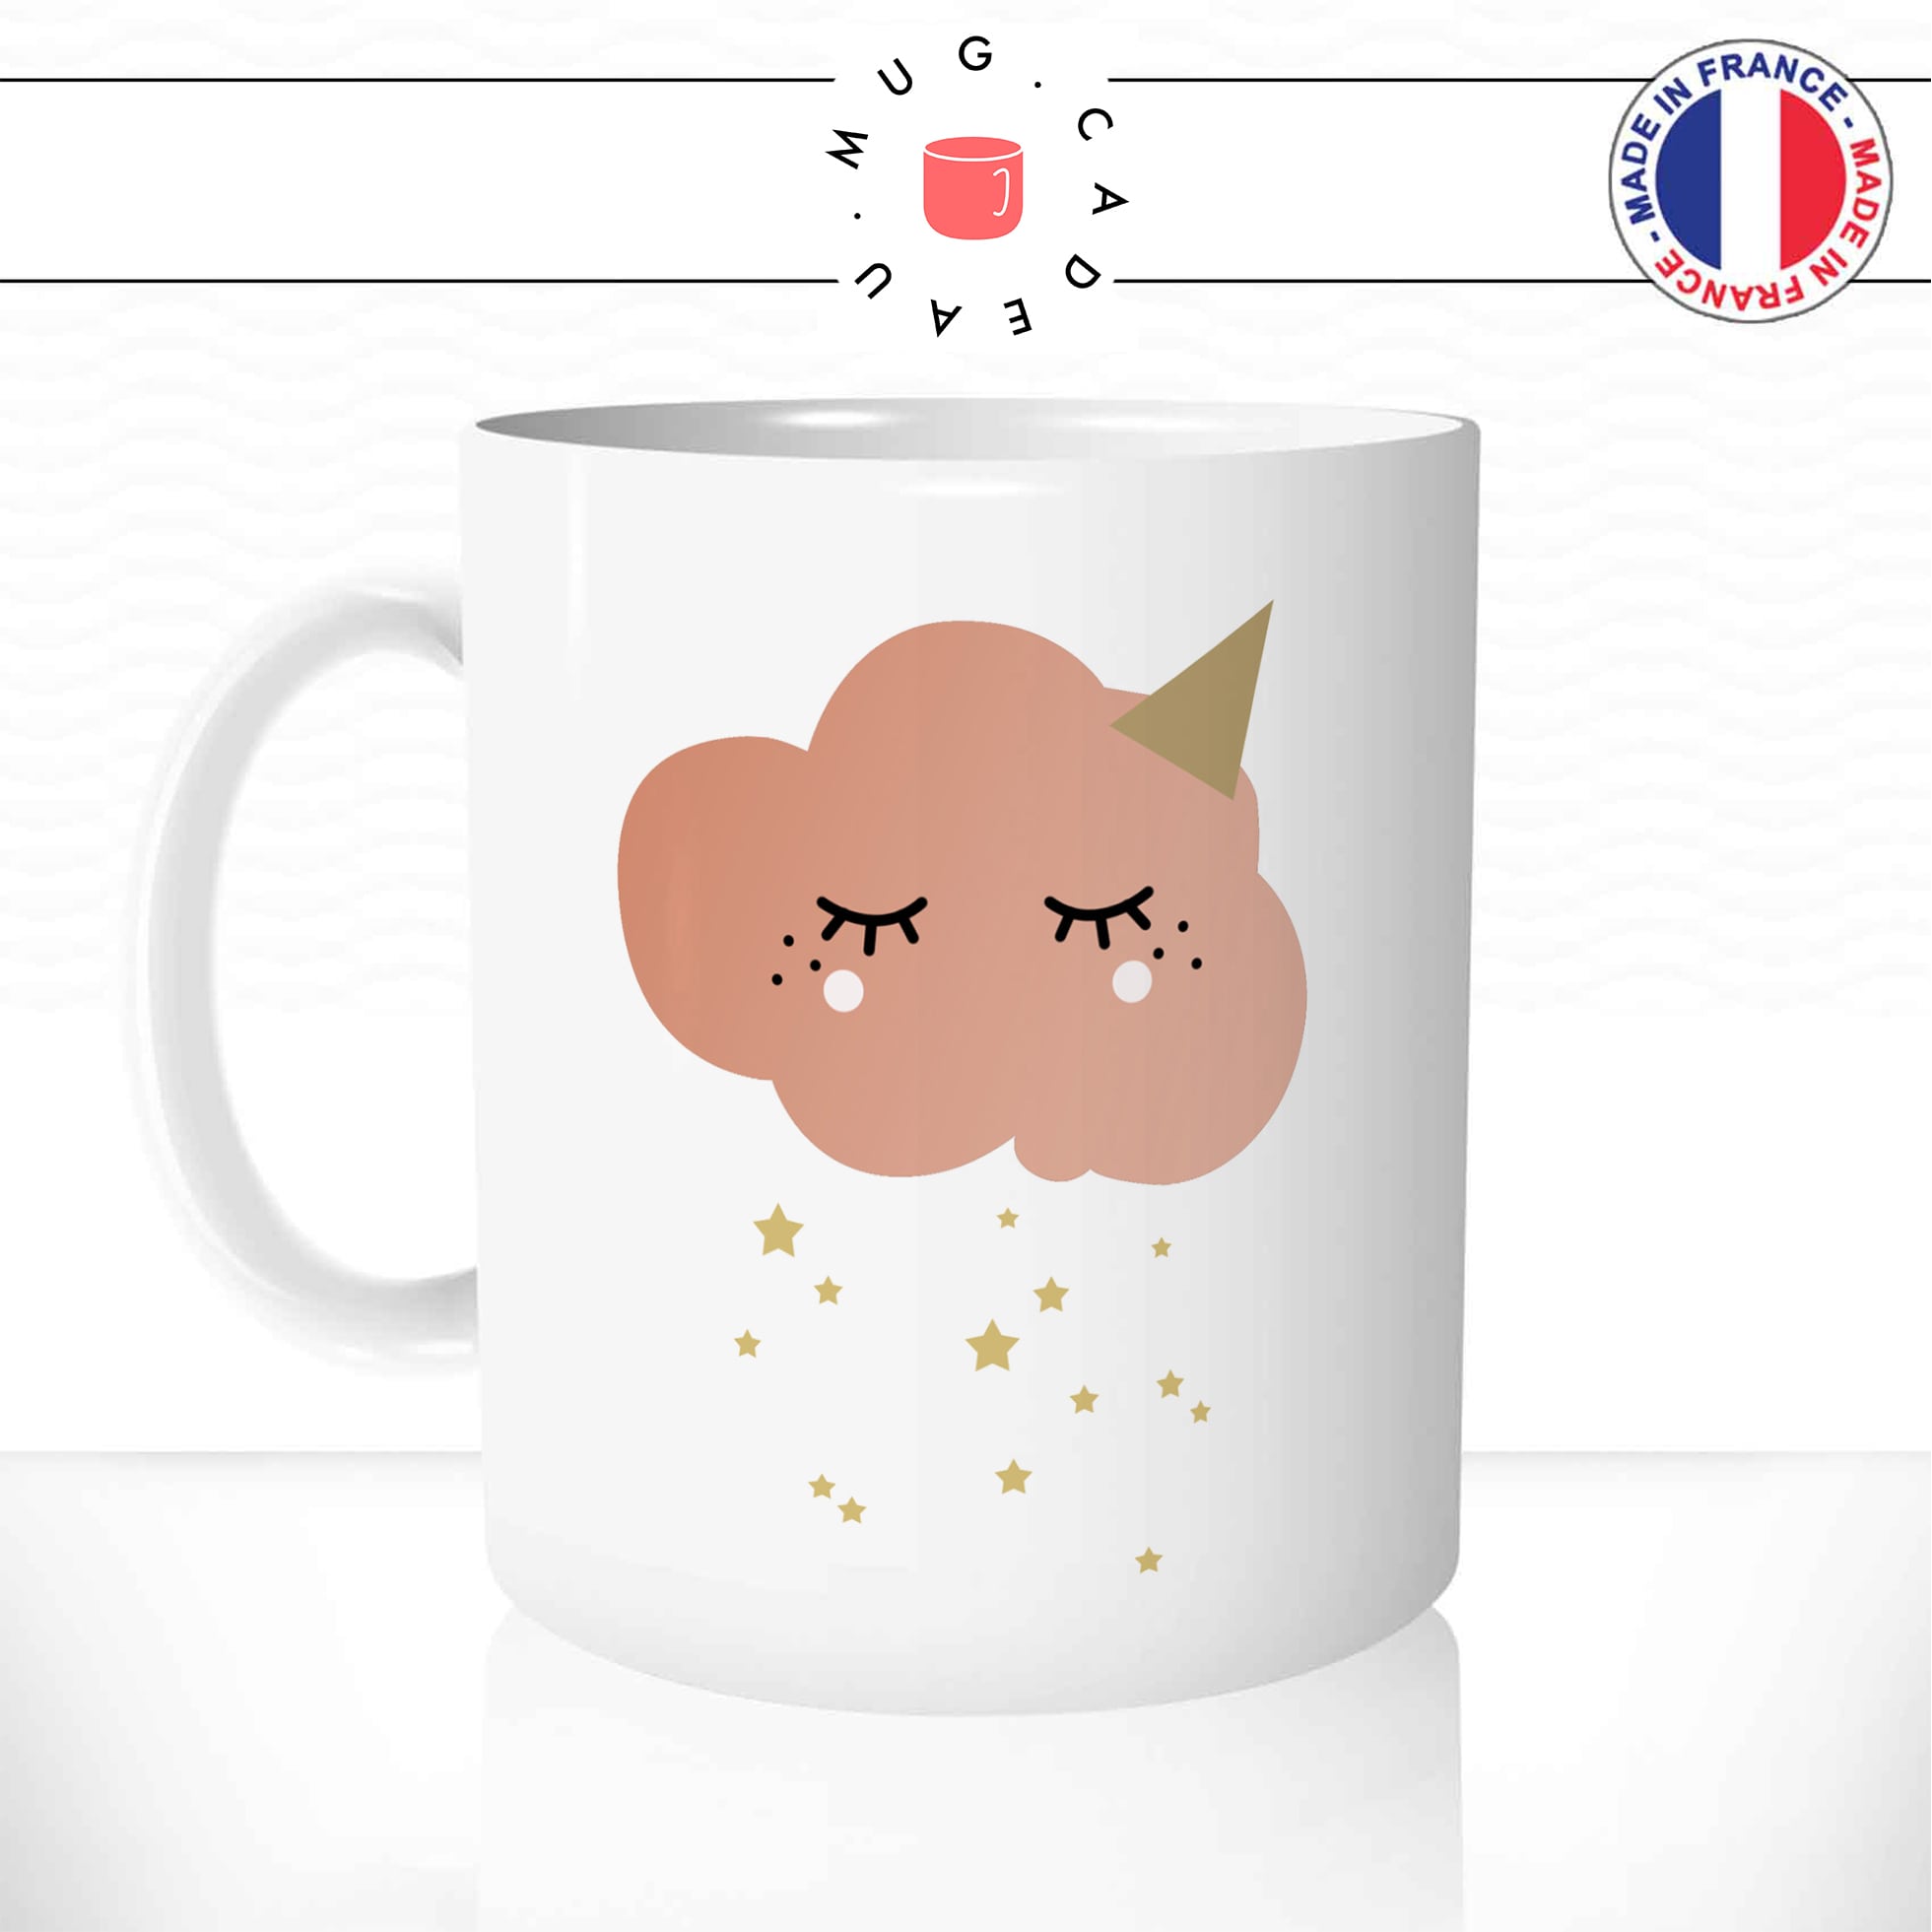 mug-tasse-enfant-nuage-rose-etoiles-chapeau-kawaii-mignon-météo-fun-humour-café-thé-idée-cadeau-original-personnalisable-min